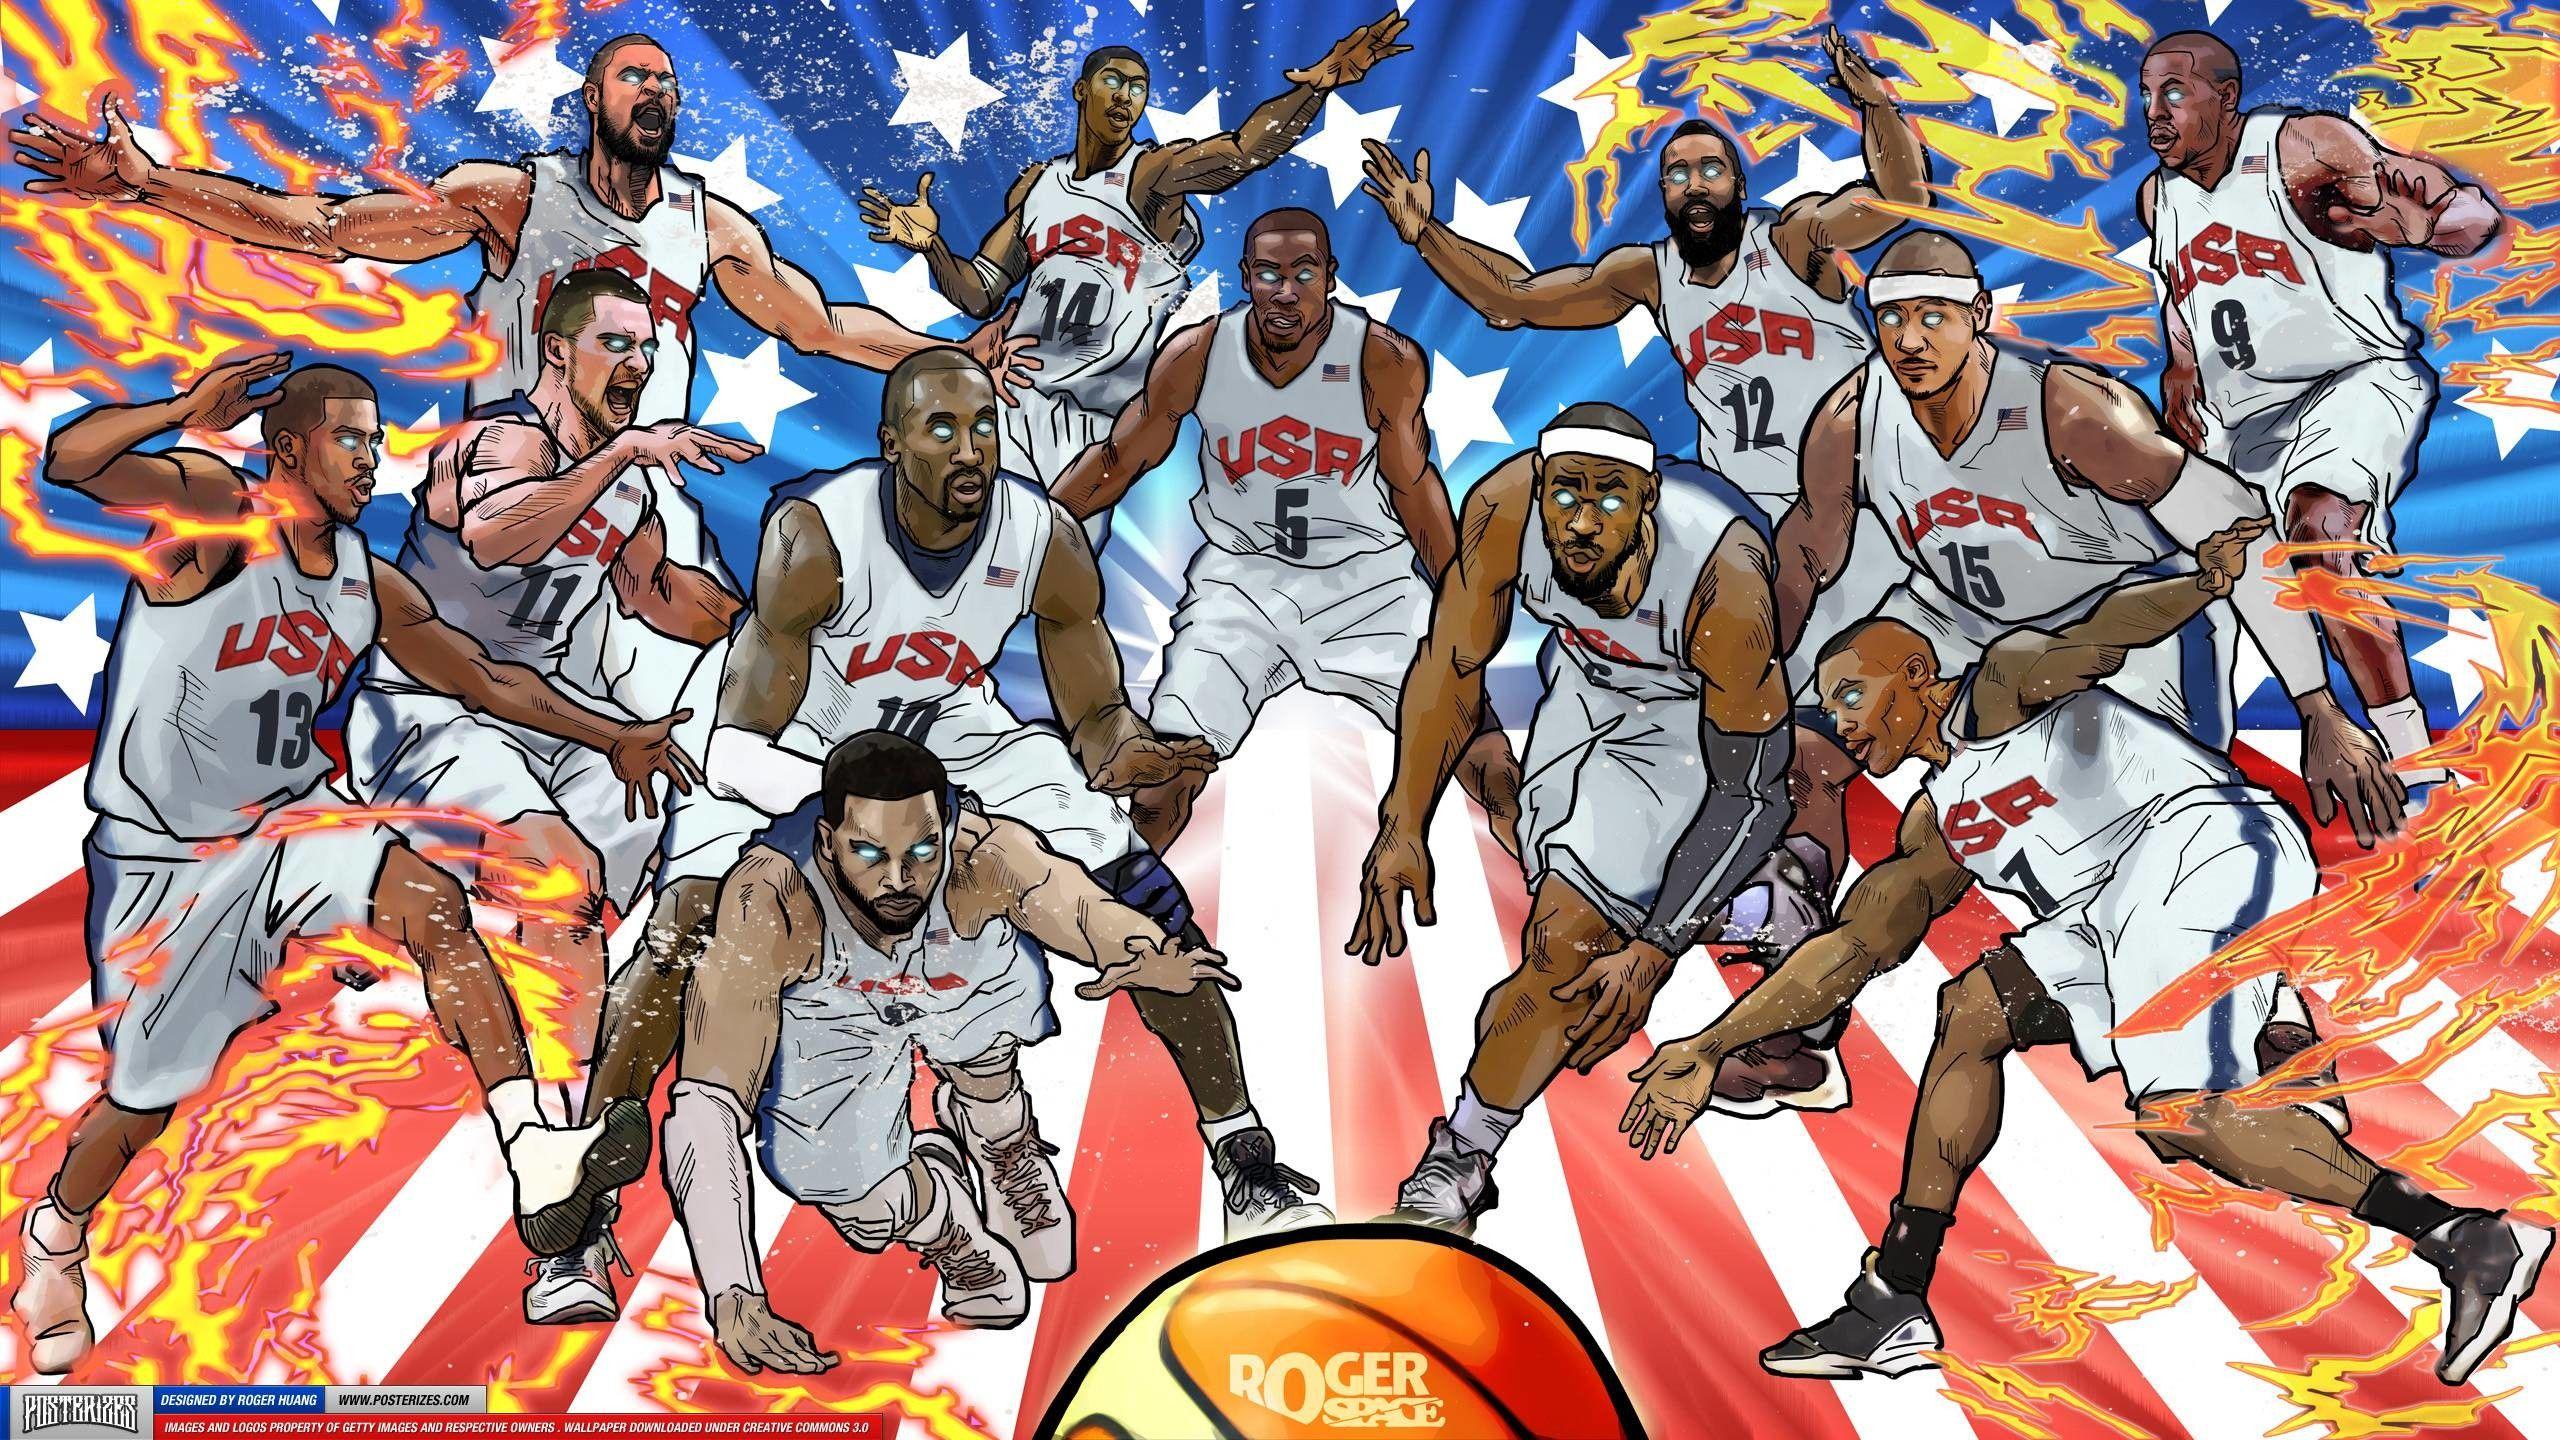 USA Basketball Team Wallpaper. Nba